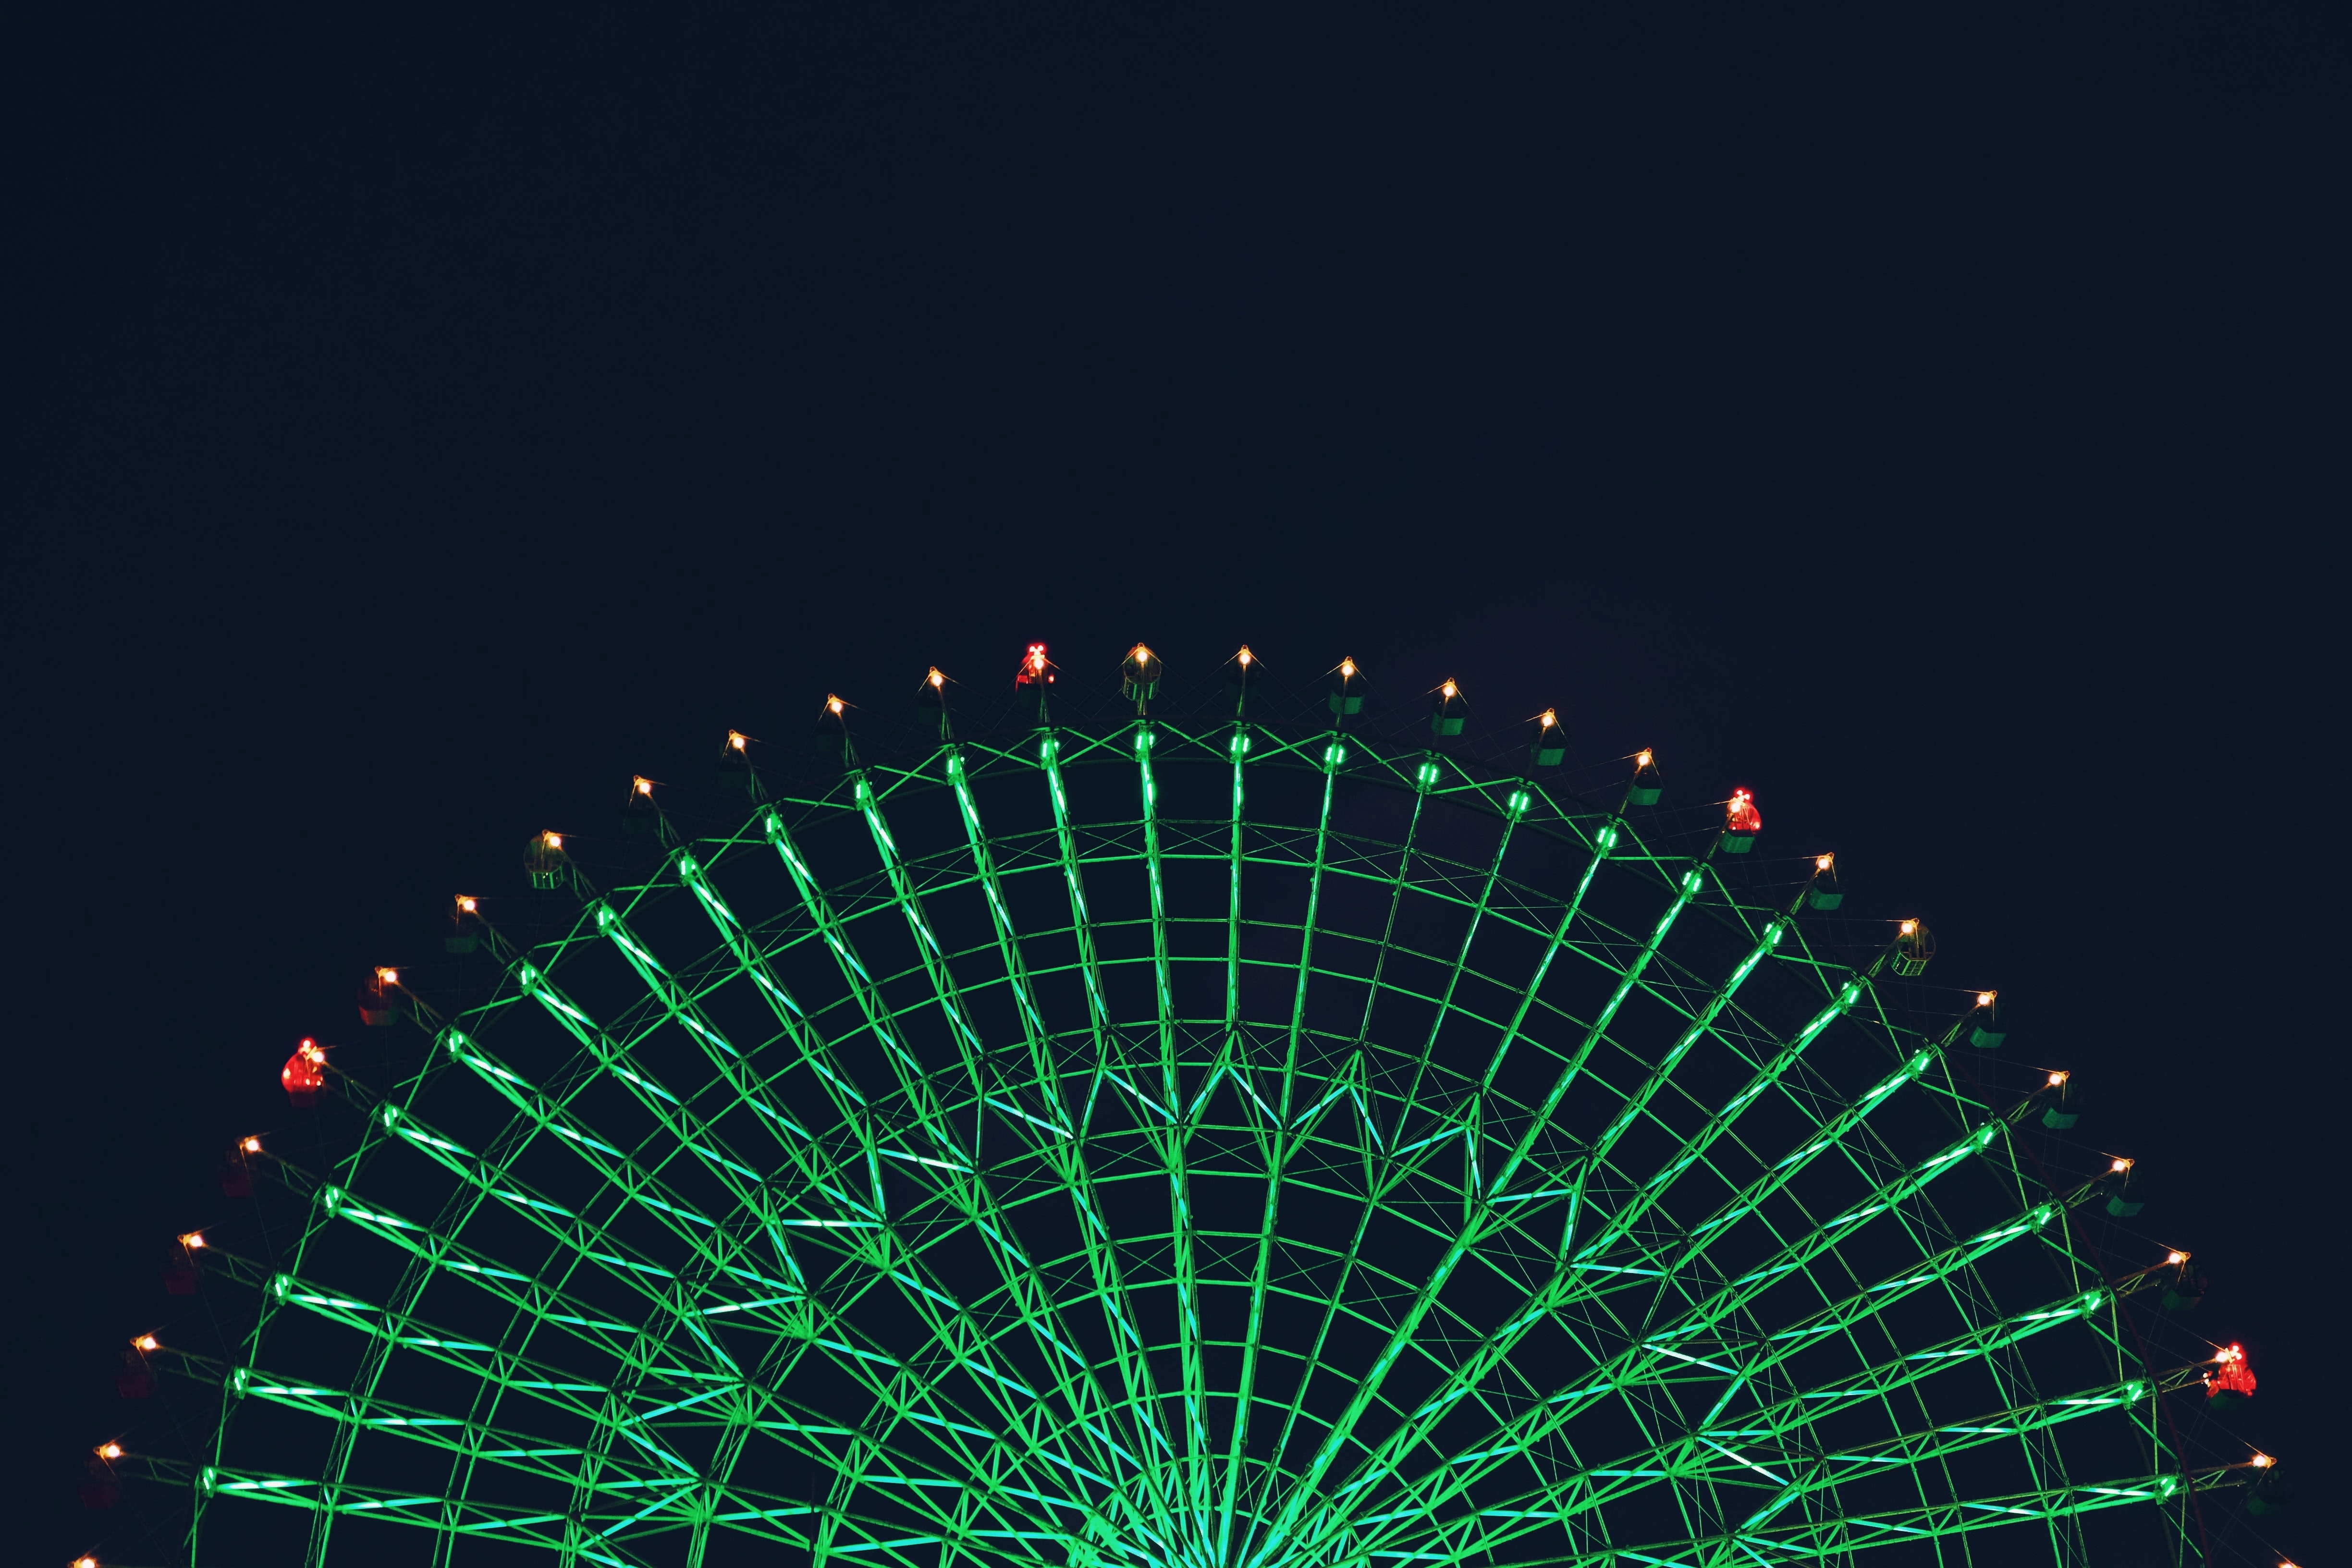 backlight, night, green, dark, illumination, ferris wheel, attraction